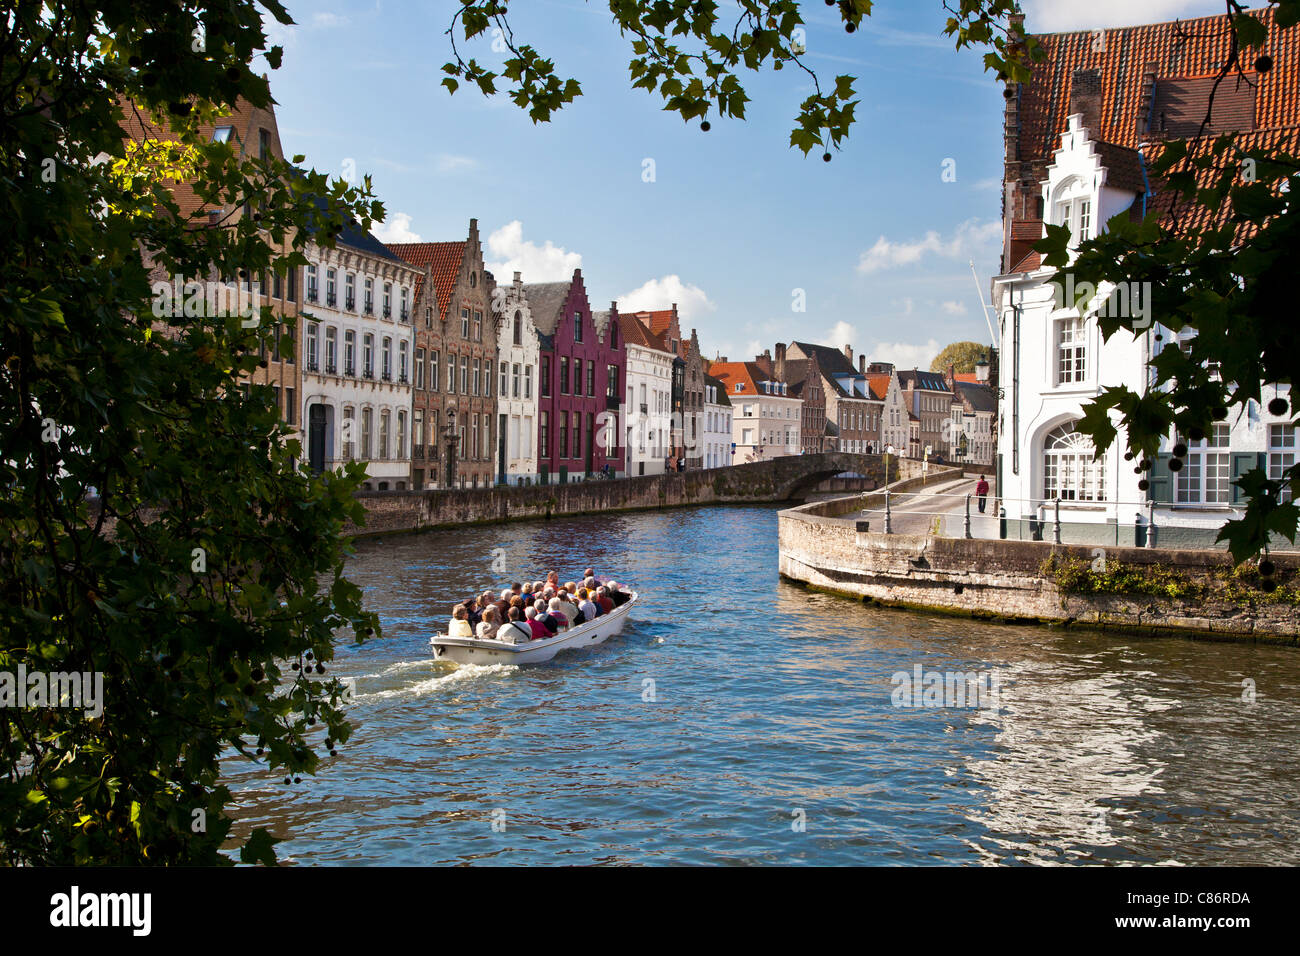 Touristenboot auf dem Kanal entlang der Spinolarei und Spiegelrei in Bruges,(Brugge), Belgien Stockfoto